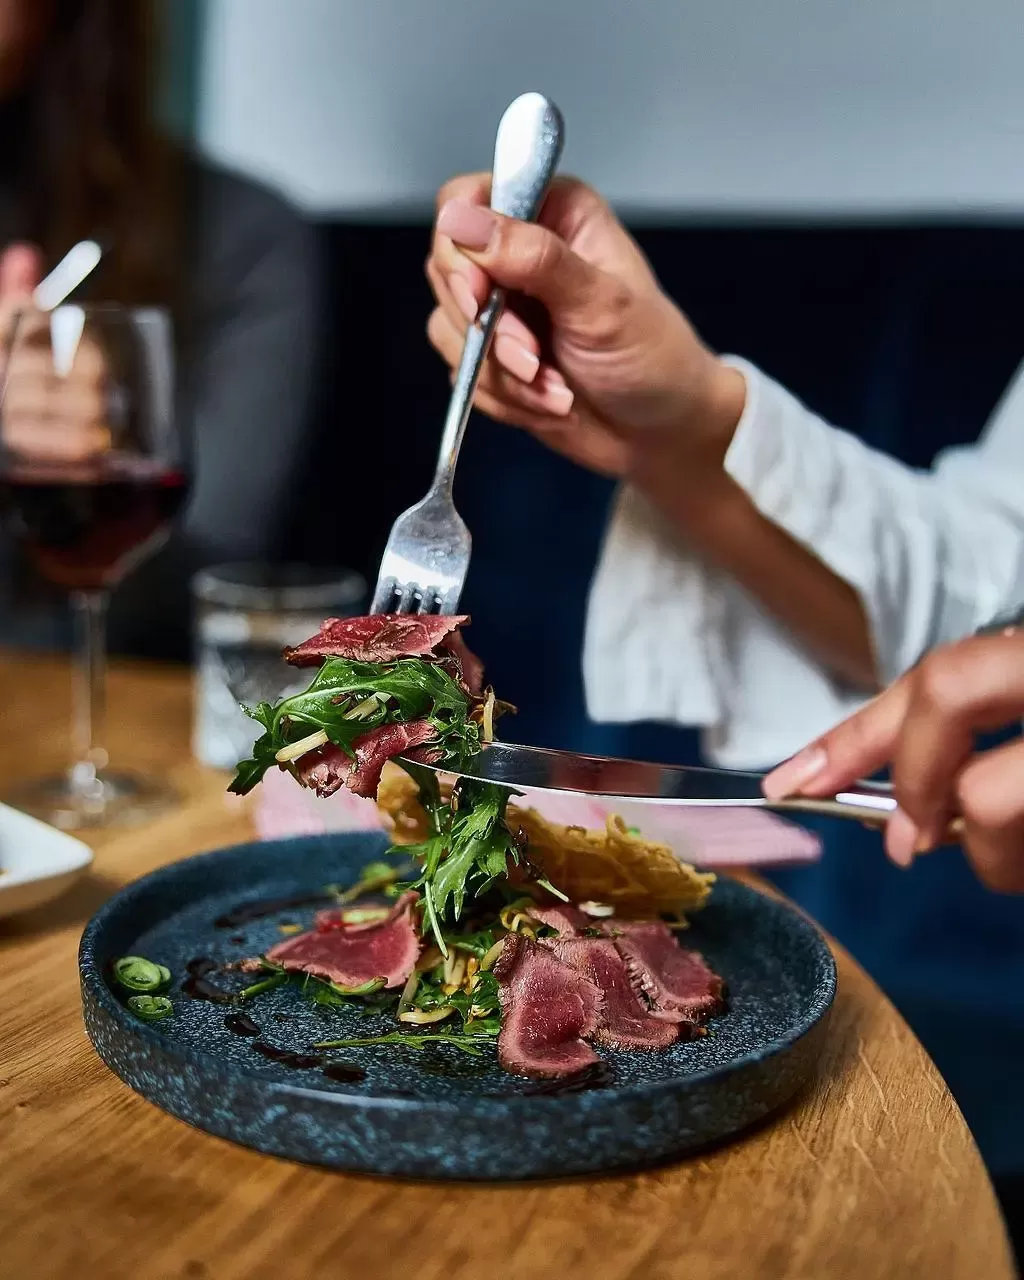  Steak restaurant amsterdam for real meat lovers